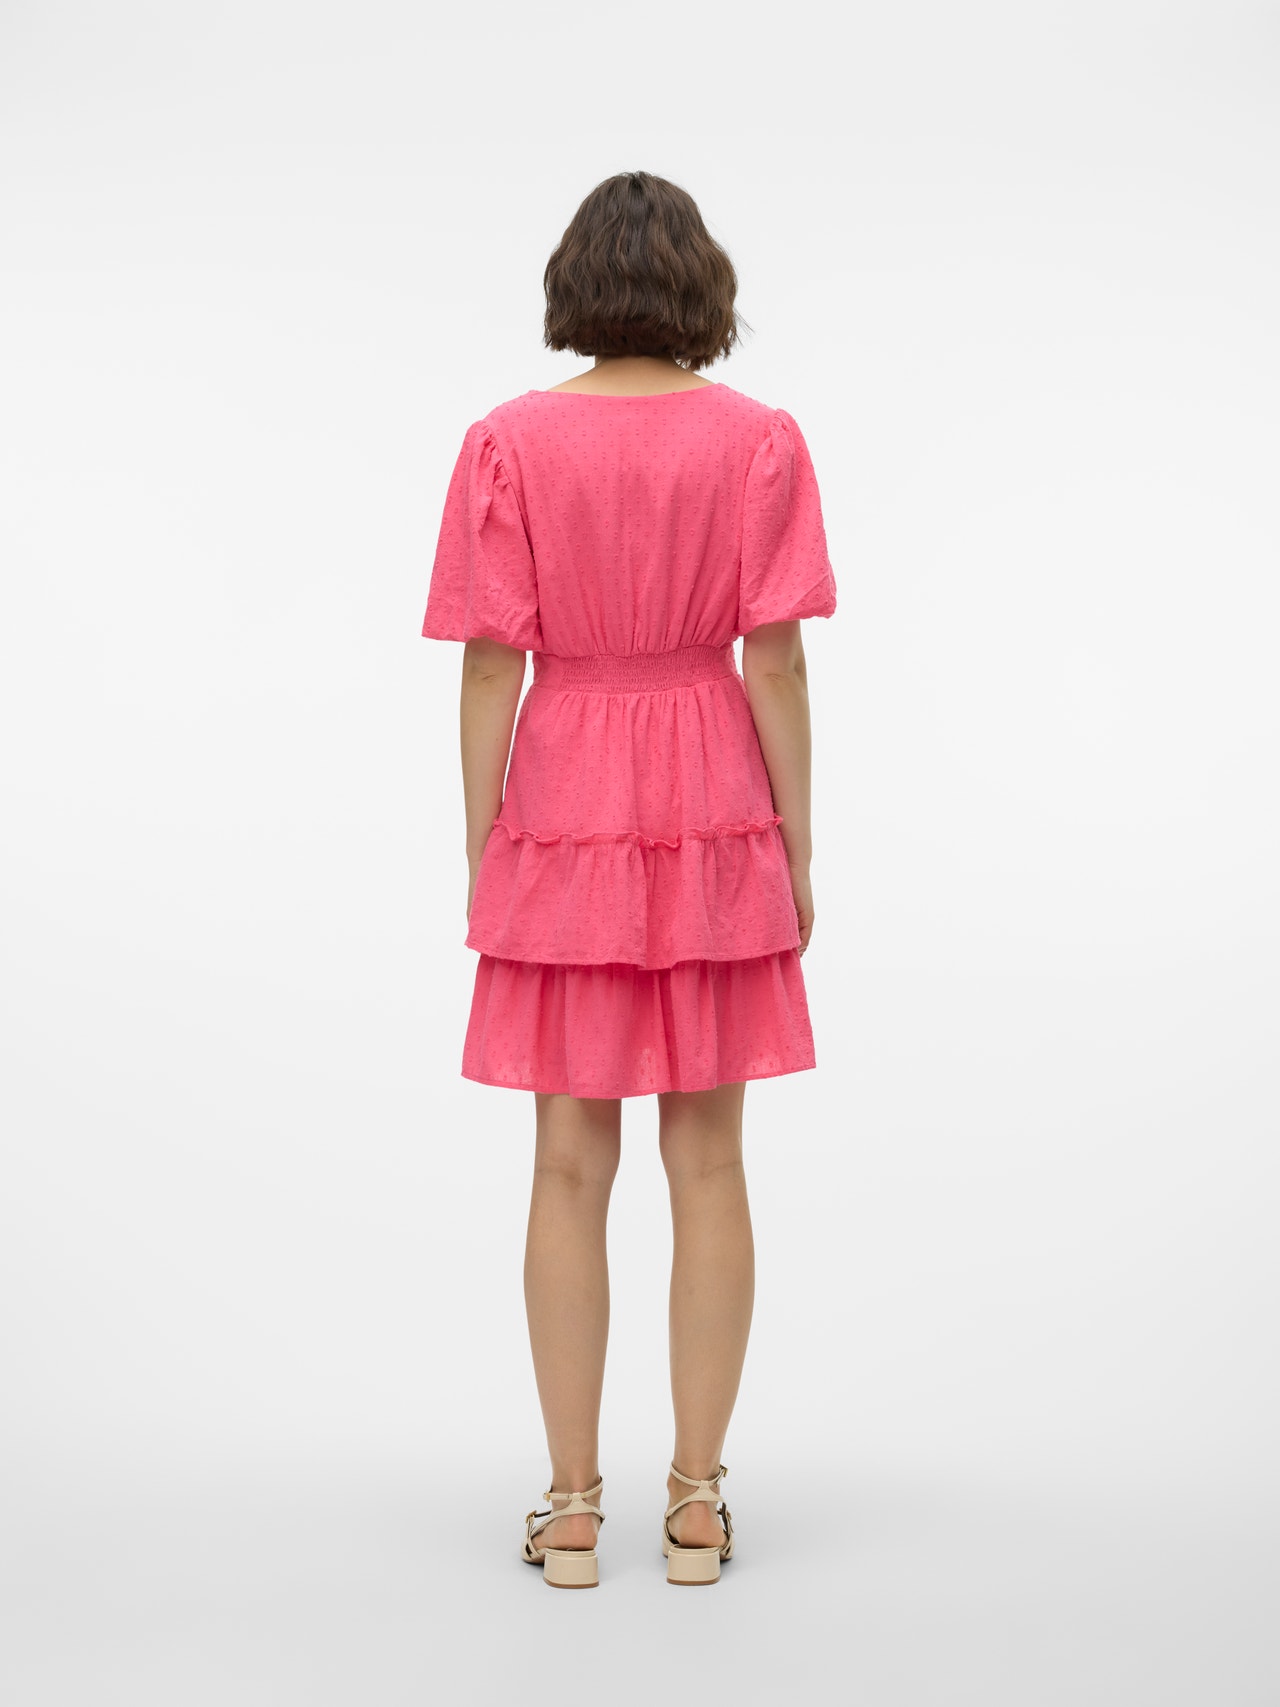 Vero Moda VMLARISA Short dress -Hot Pink - 10310175